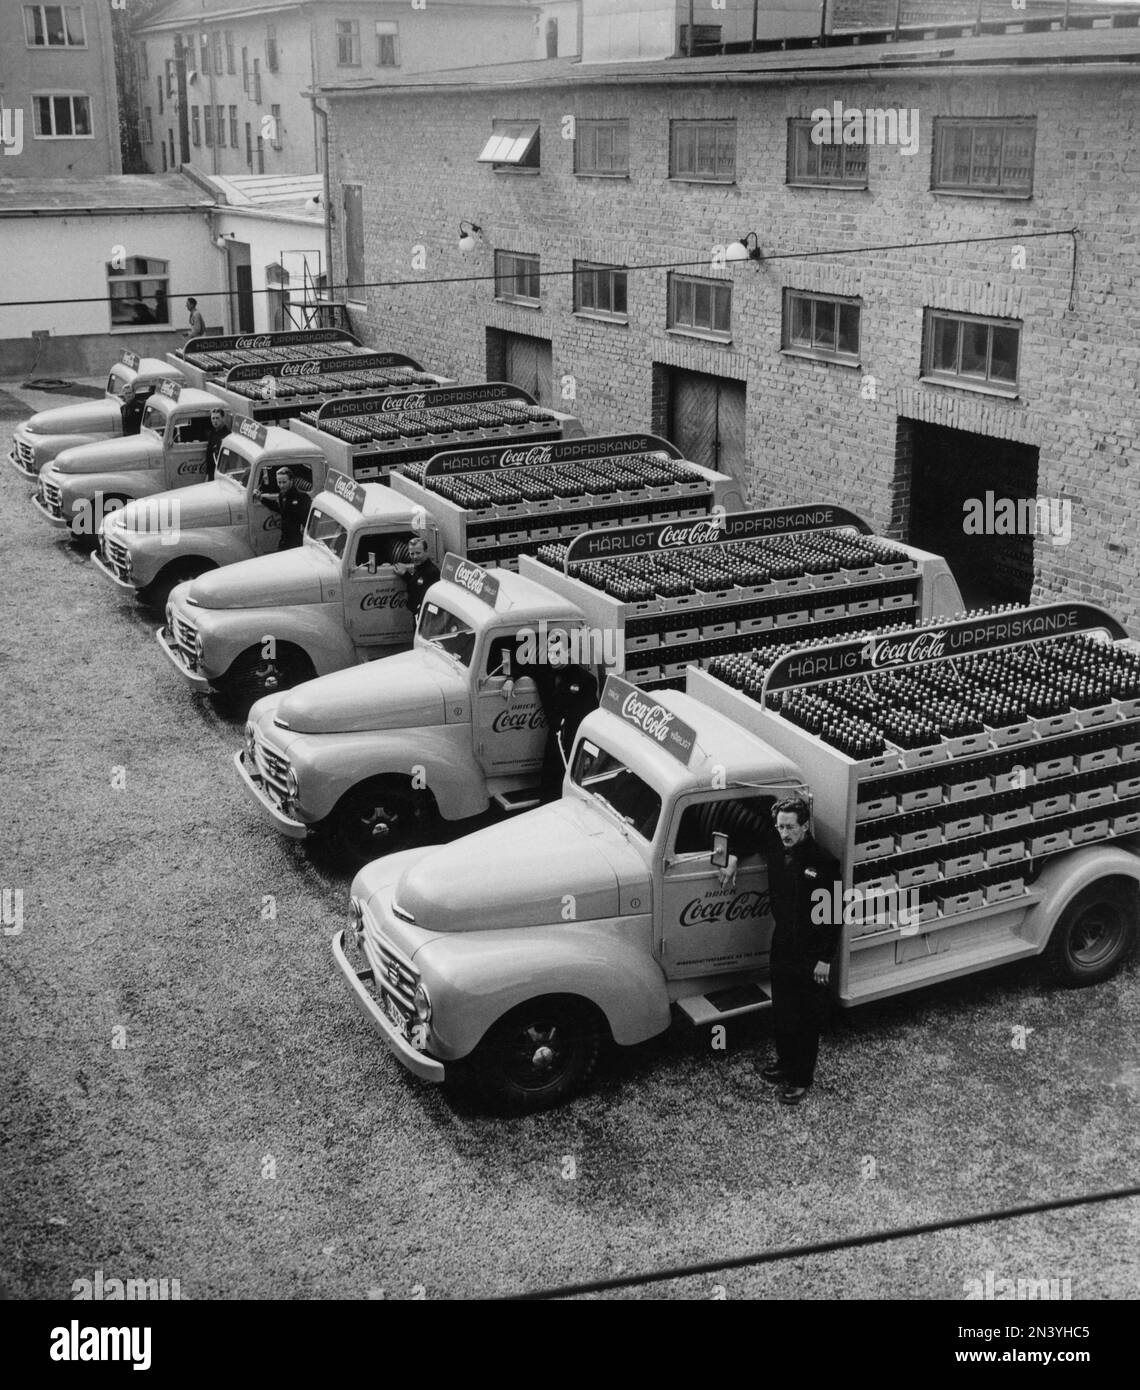 Coca-Cola en 1950s. En 1 janvier 1953, Coca-Cola a été autorisé pour la première fois à être fabriqué et vendu en Suède, avant d'être limité à la vente en Suède puisque le contenu de Coca-Cola comprenait des substances interdites comme l'acide phosphorique et la caféine. Aperçu des premiers camions de distribution de la brasserie Mineralvattenfabriken Tre Kronor chargé de bouteilles Coca-Cola. Volvo Trucks modèle L34 modifié et peint en rouge pour l'utilisation exclusive sur les camions Coca-Cola. Coca-Cola a été tôt avec avoir la publicité sur leurs véhicules. Suède 1953 Banque D'Images